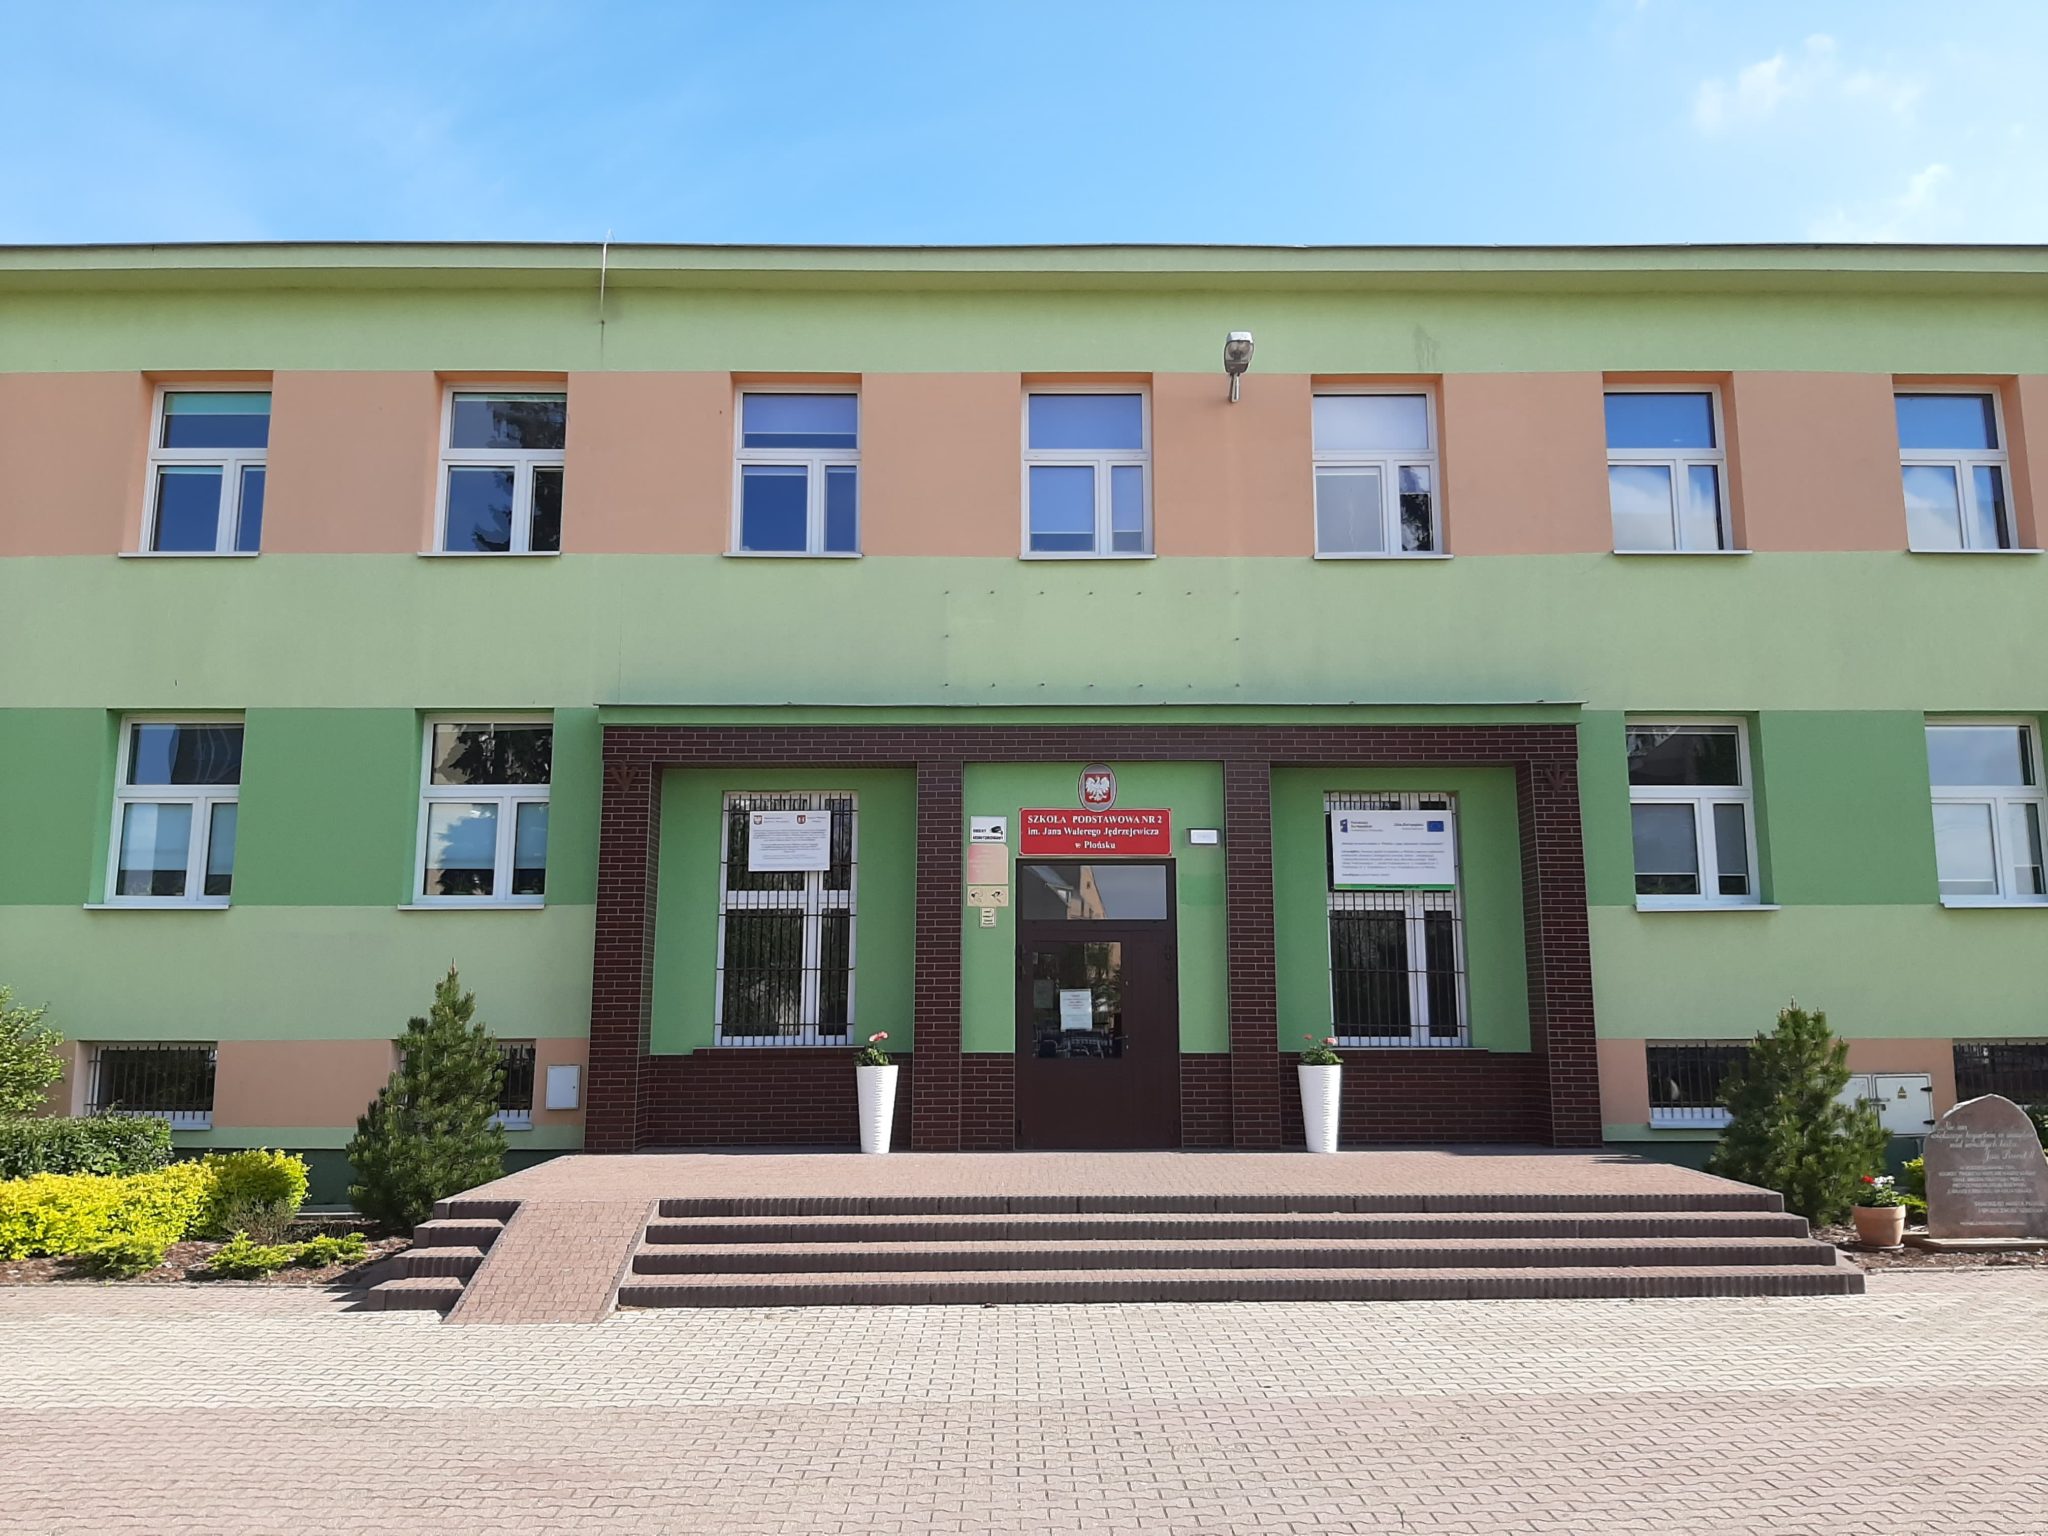 Luzino Szkoła Podstawowa Nr 2 Historia szkoły – Szkoła Podstawowa nr 2 w Płońsku